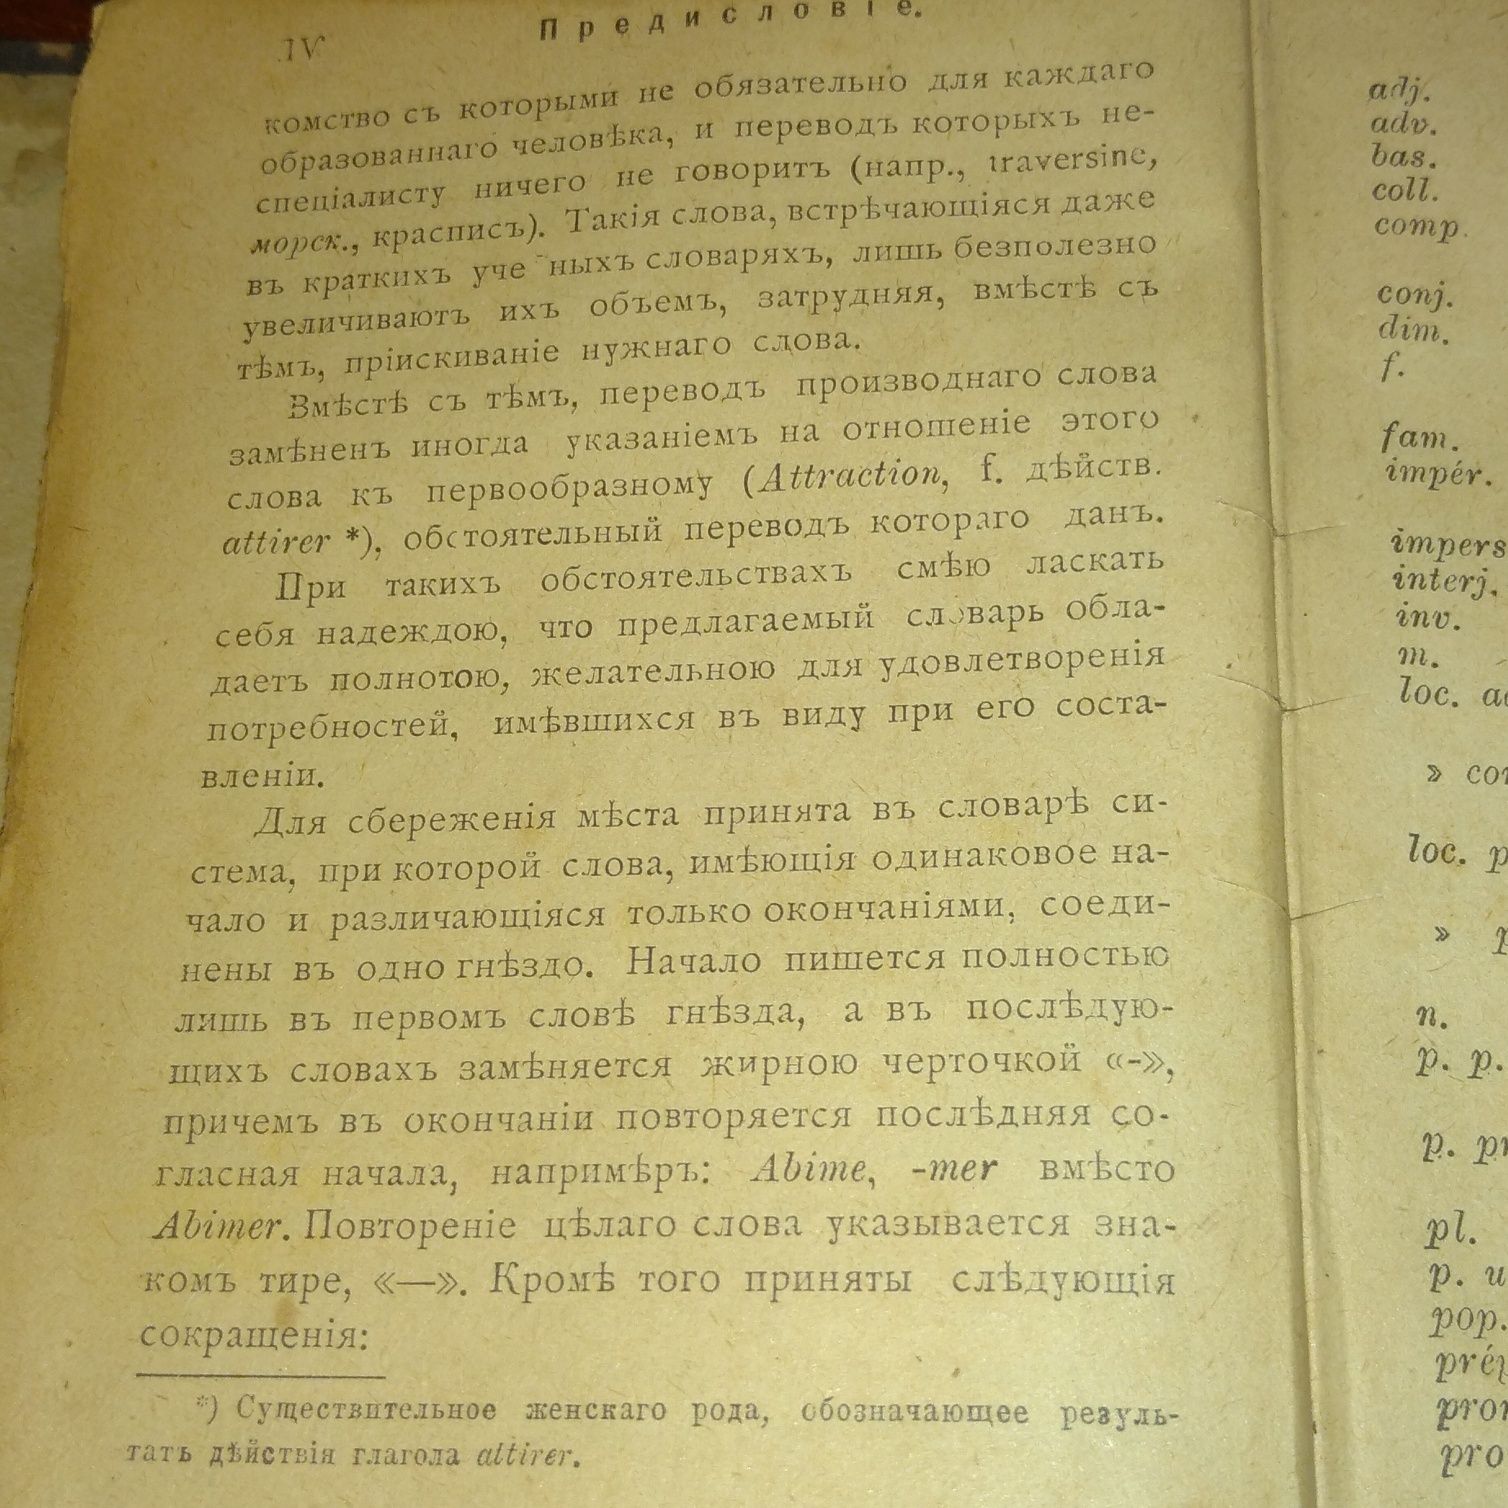 Брокгауз и Ефрон Французко-русский словарь 1903